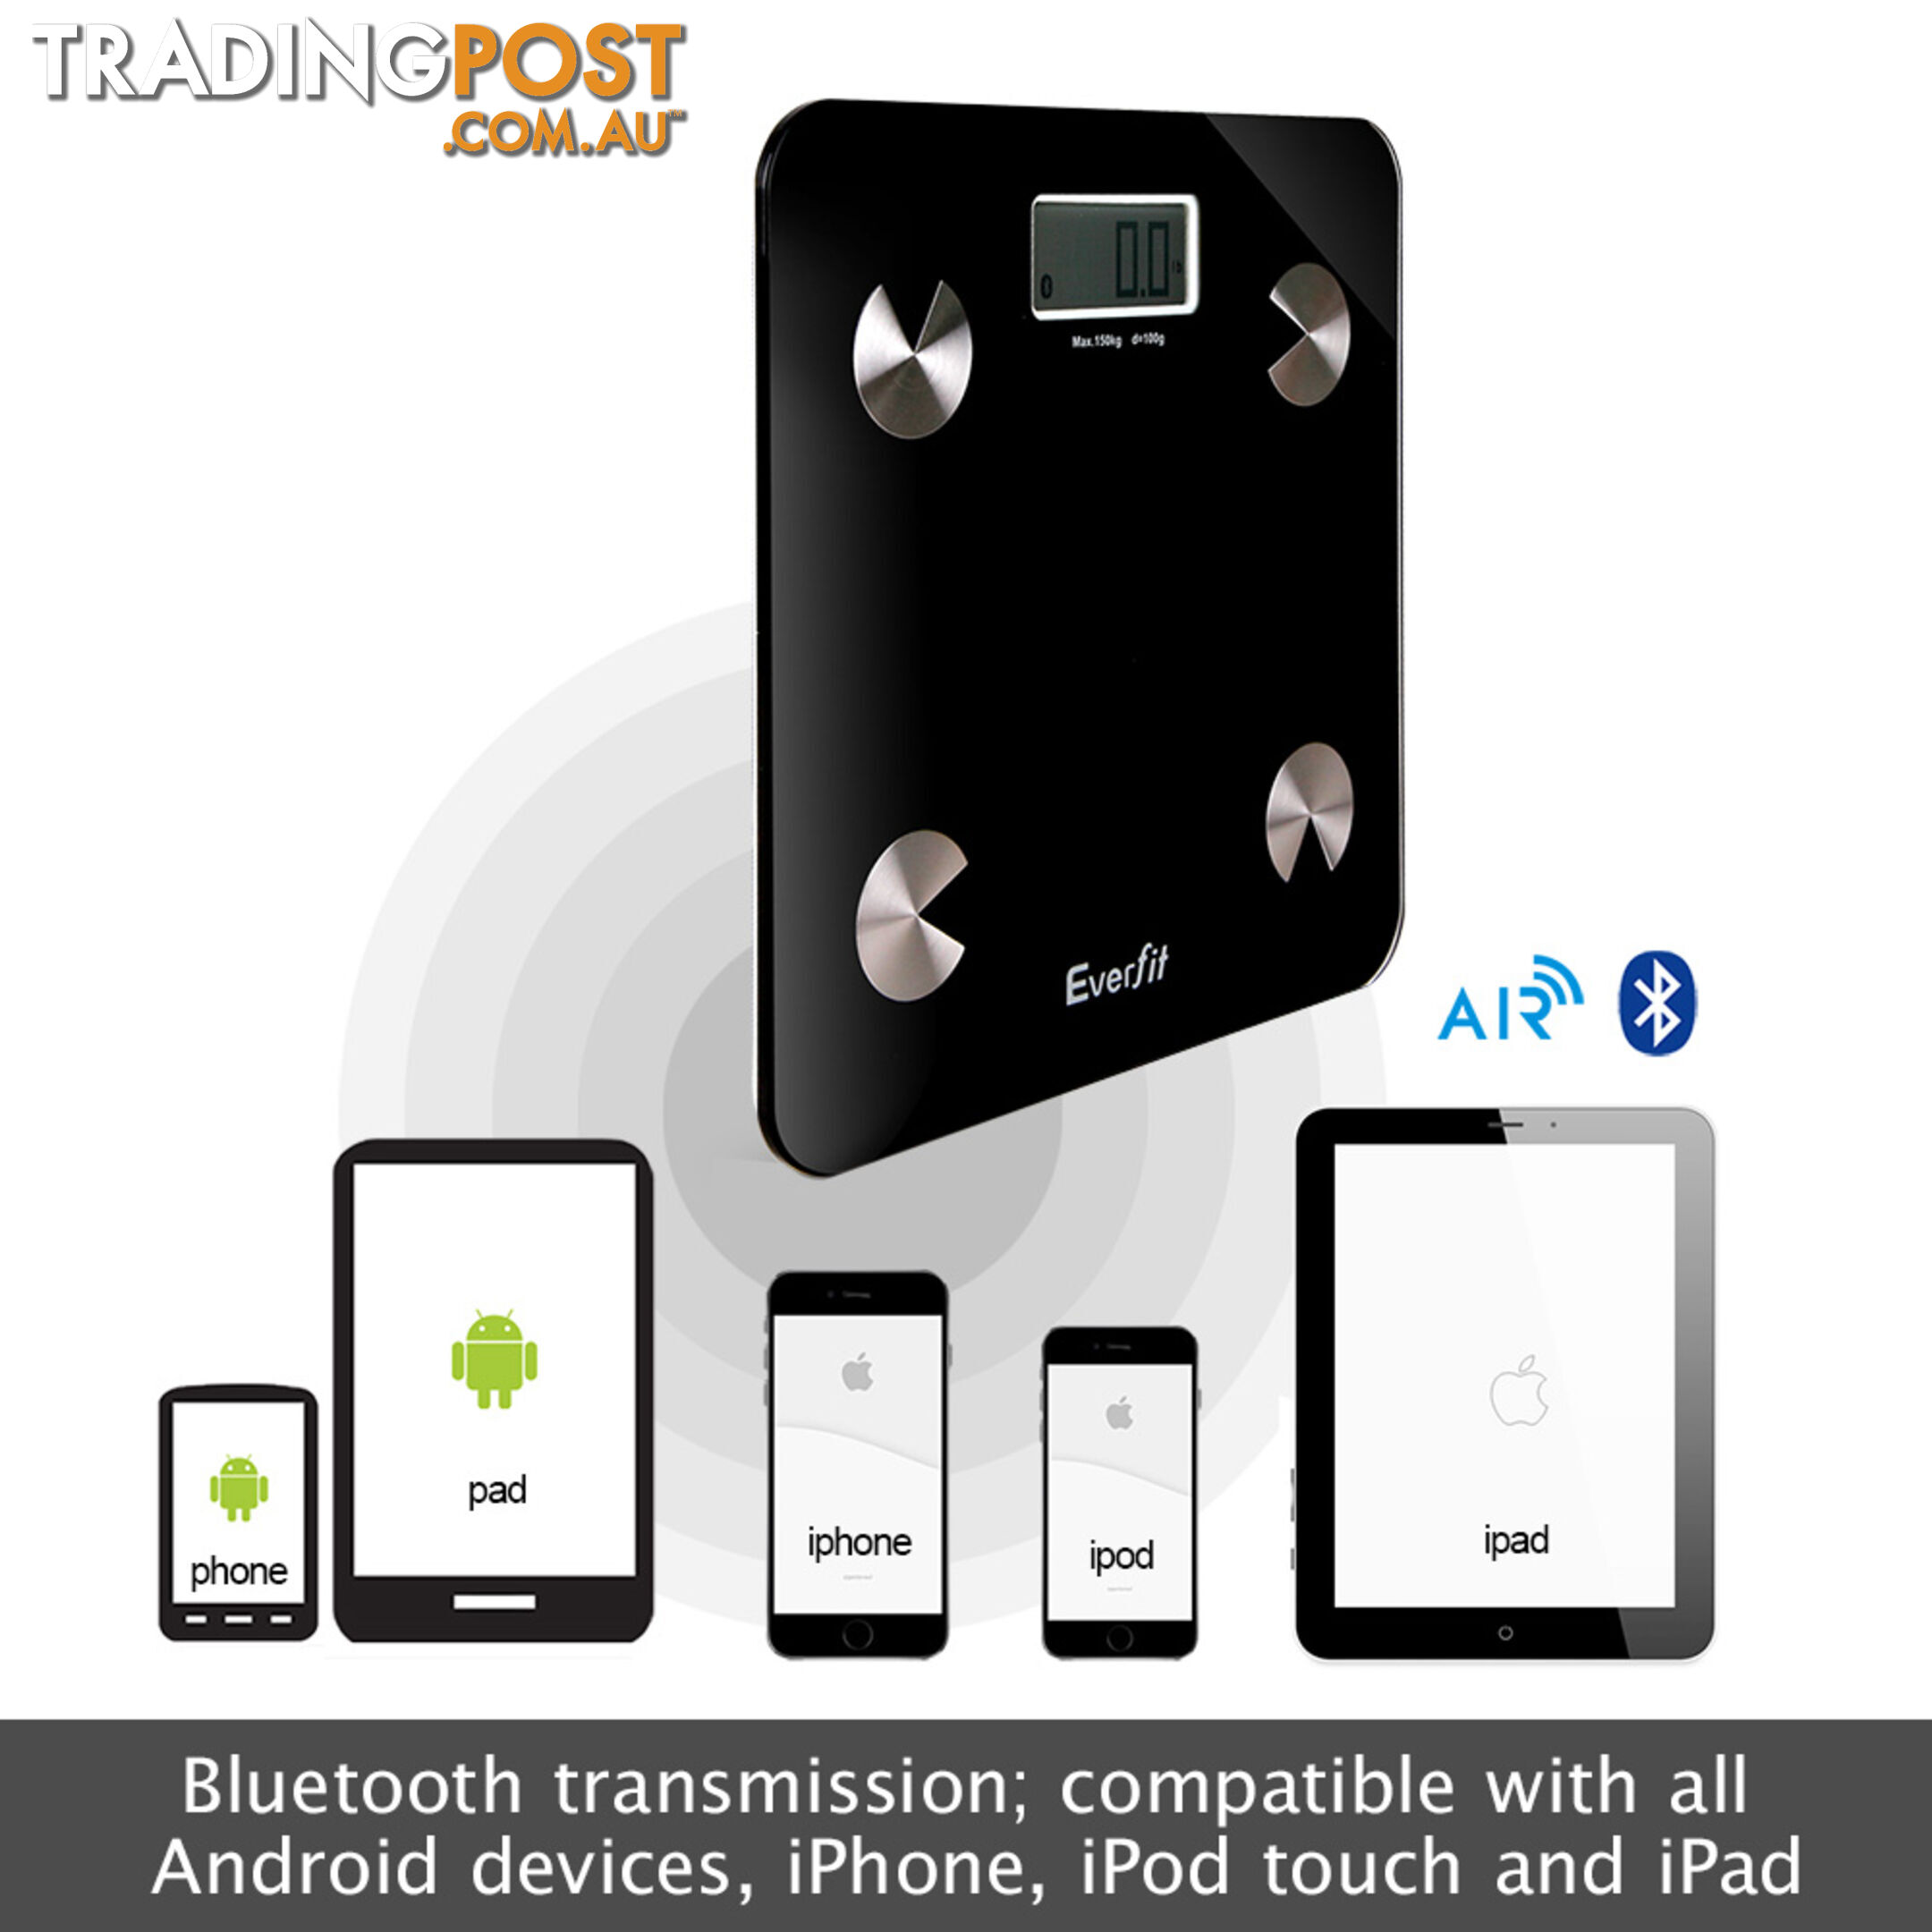 Digital Bathroom Scale w/ Wireless Bluetooth 150KG